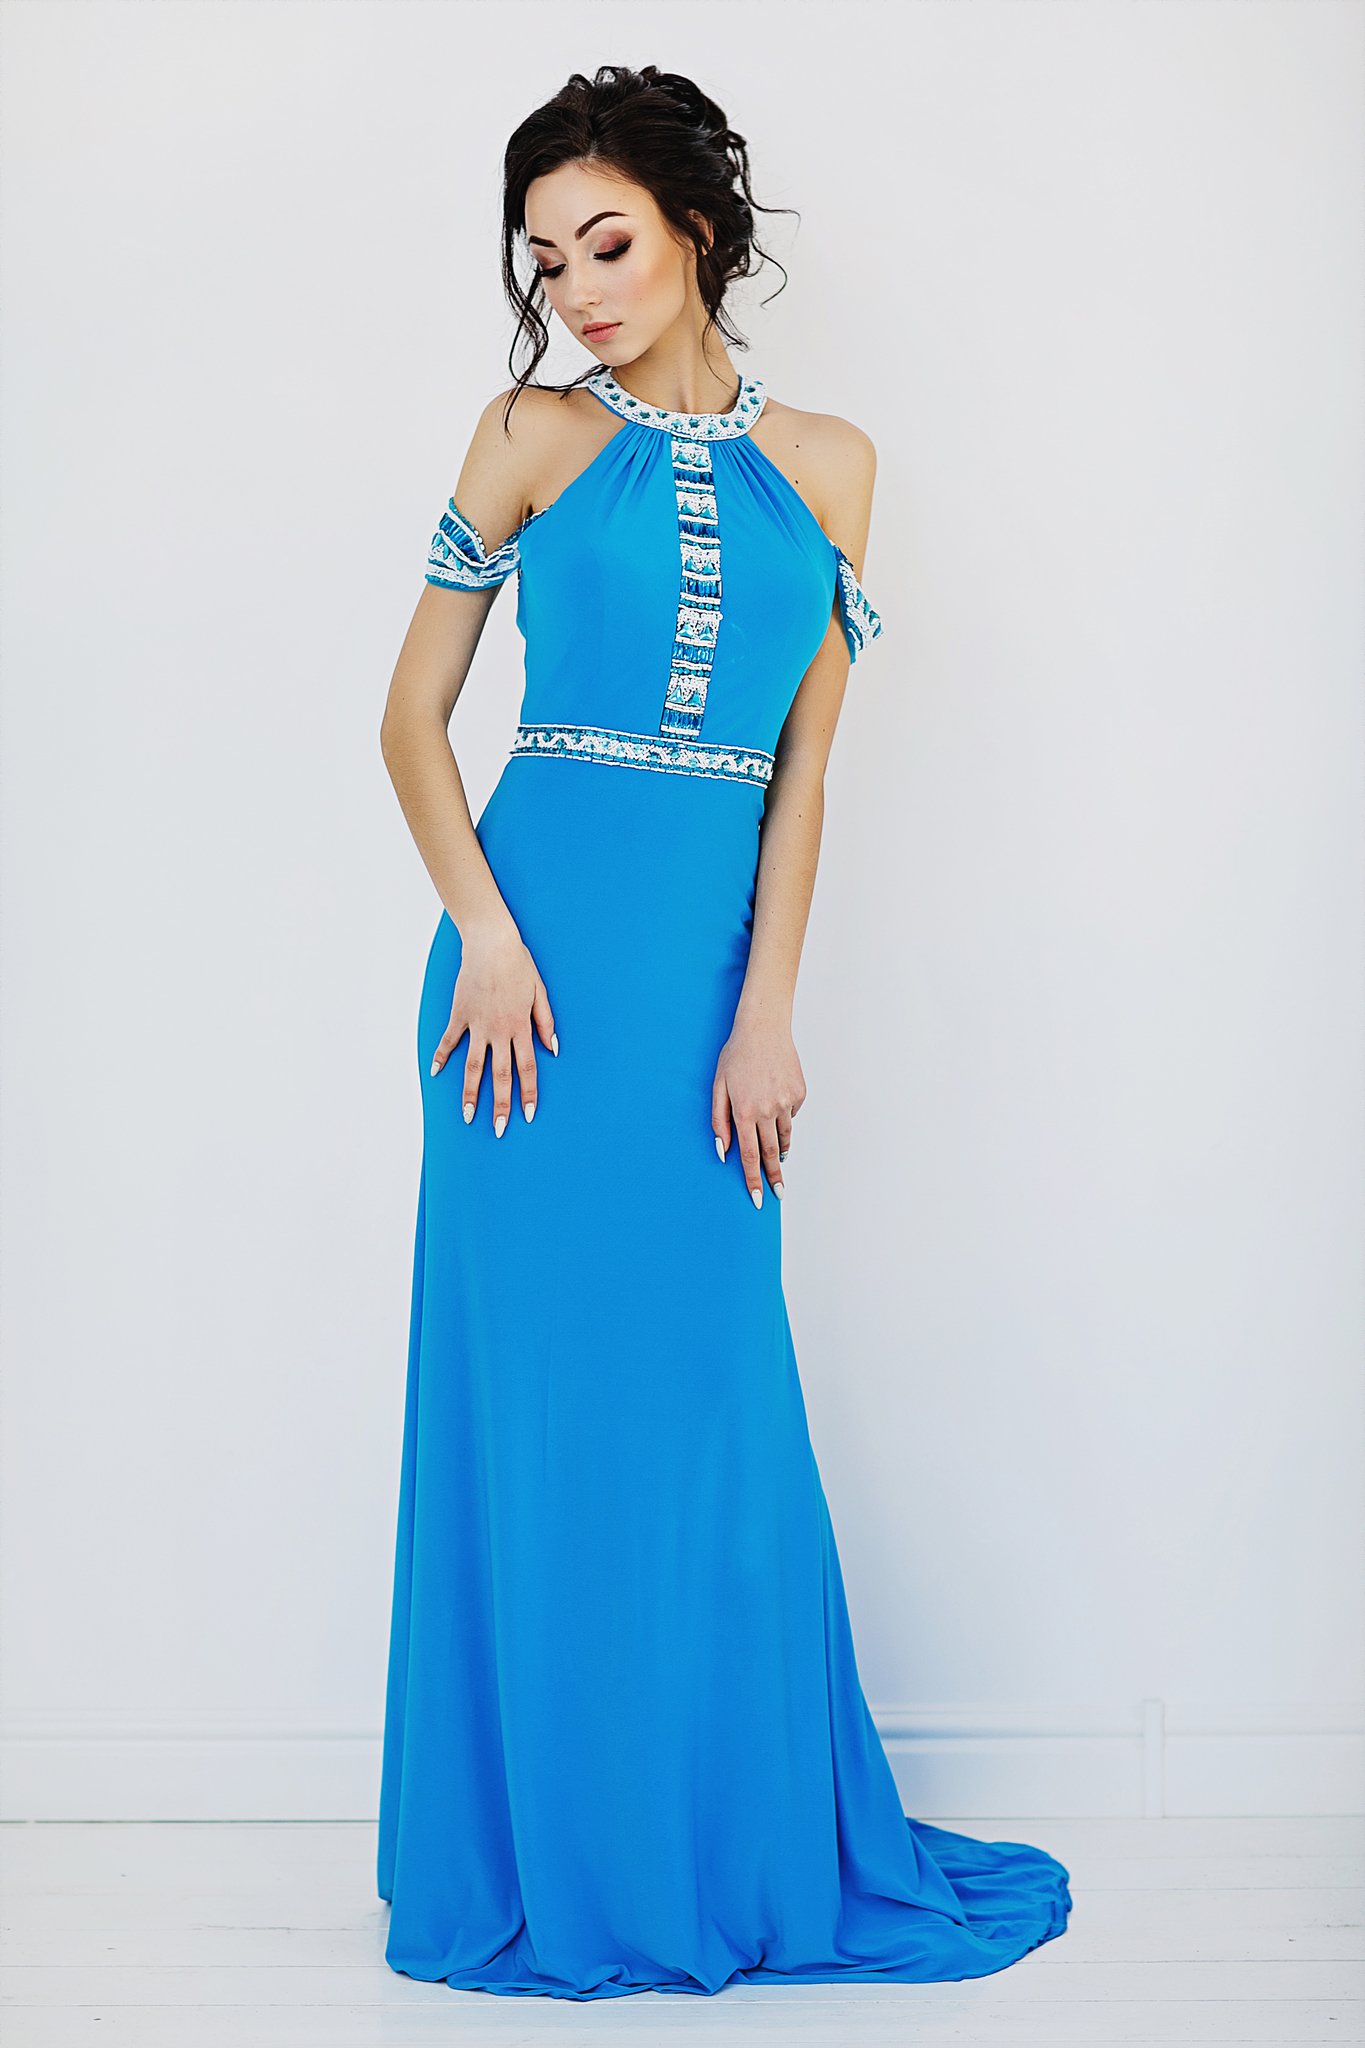 Sherri Hill 50341 Голубое платье в пол, верх украшен камнями, юбка длинная и облегающая фигуру со шлейфом